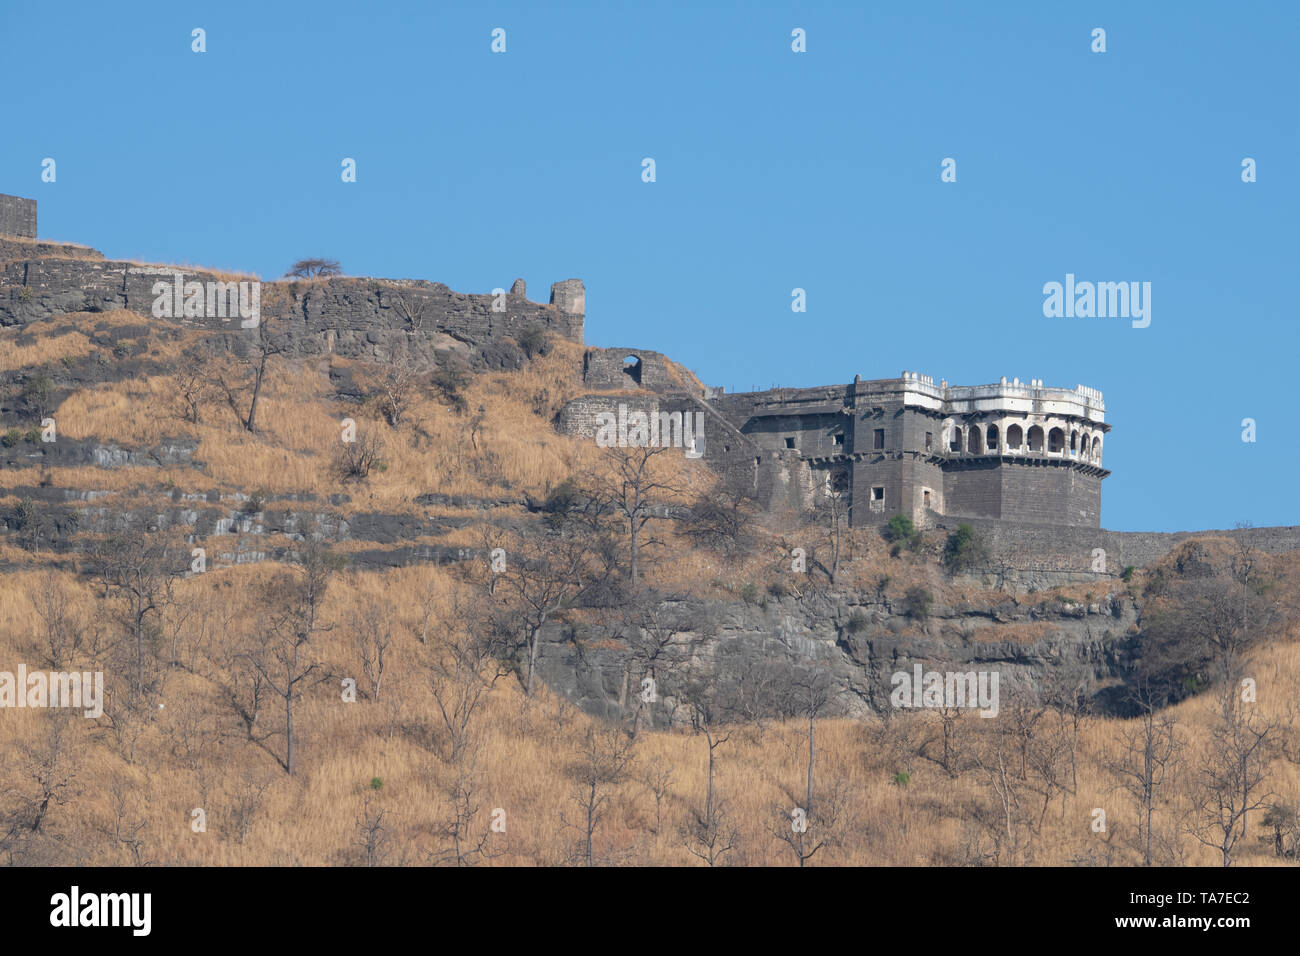 L'Inde, l'État du Maharashtra, Aurangabad, Daulatabad Fort Daulatabad, aka Deogiri (la colline des dieux) c. 13e siècle. L'un des mieux conservés du monde Banque D'Images